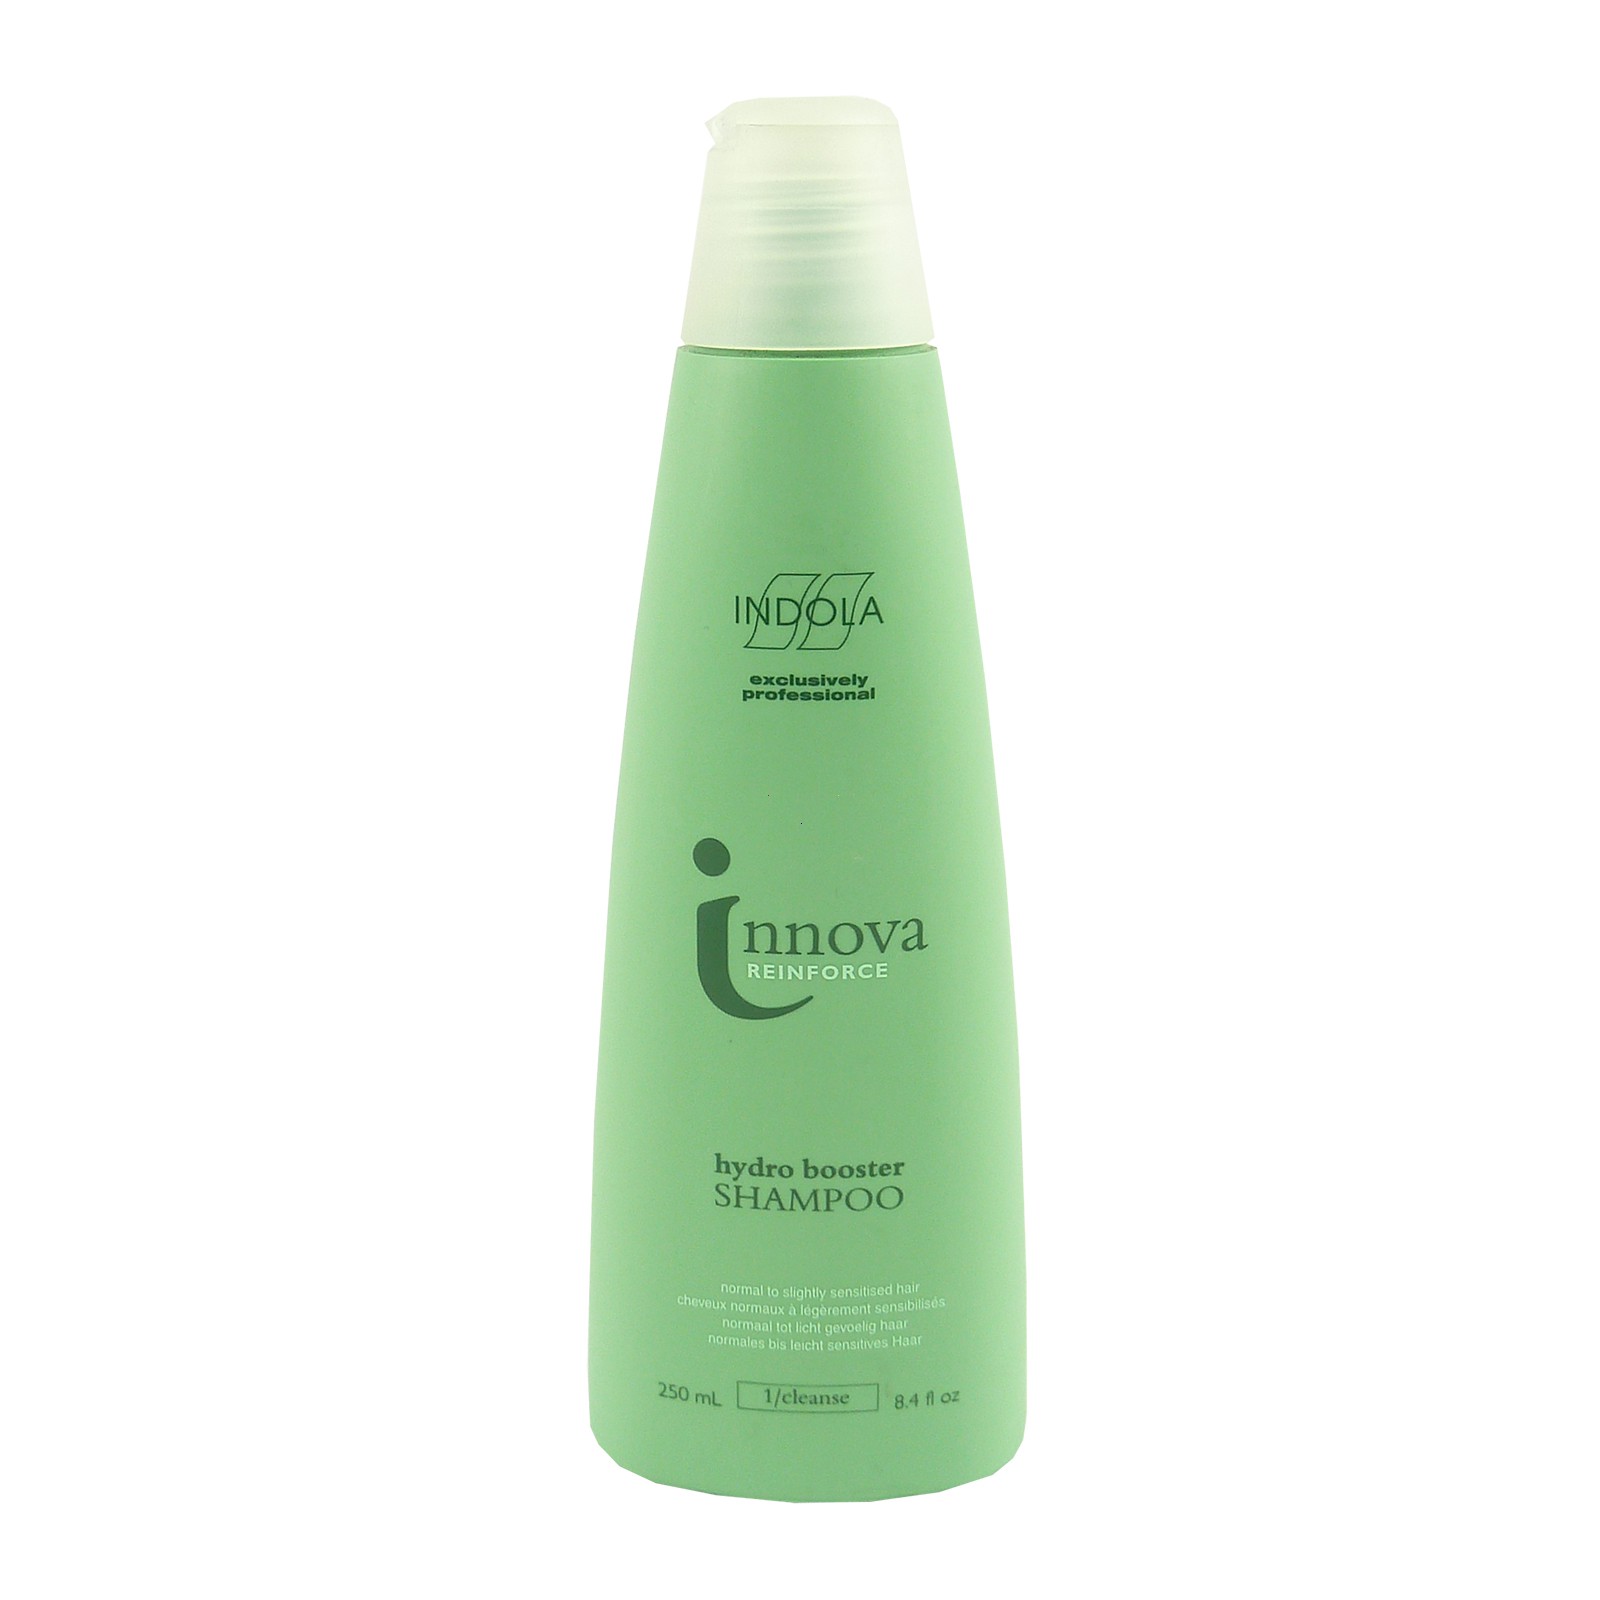 Indola - innova reinforce - hydro booster Shampoo Haar Wäsche Pflege 250ml unter Haarpflege >> Shampoos